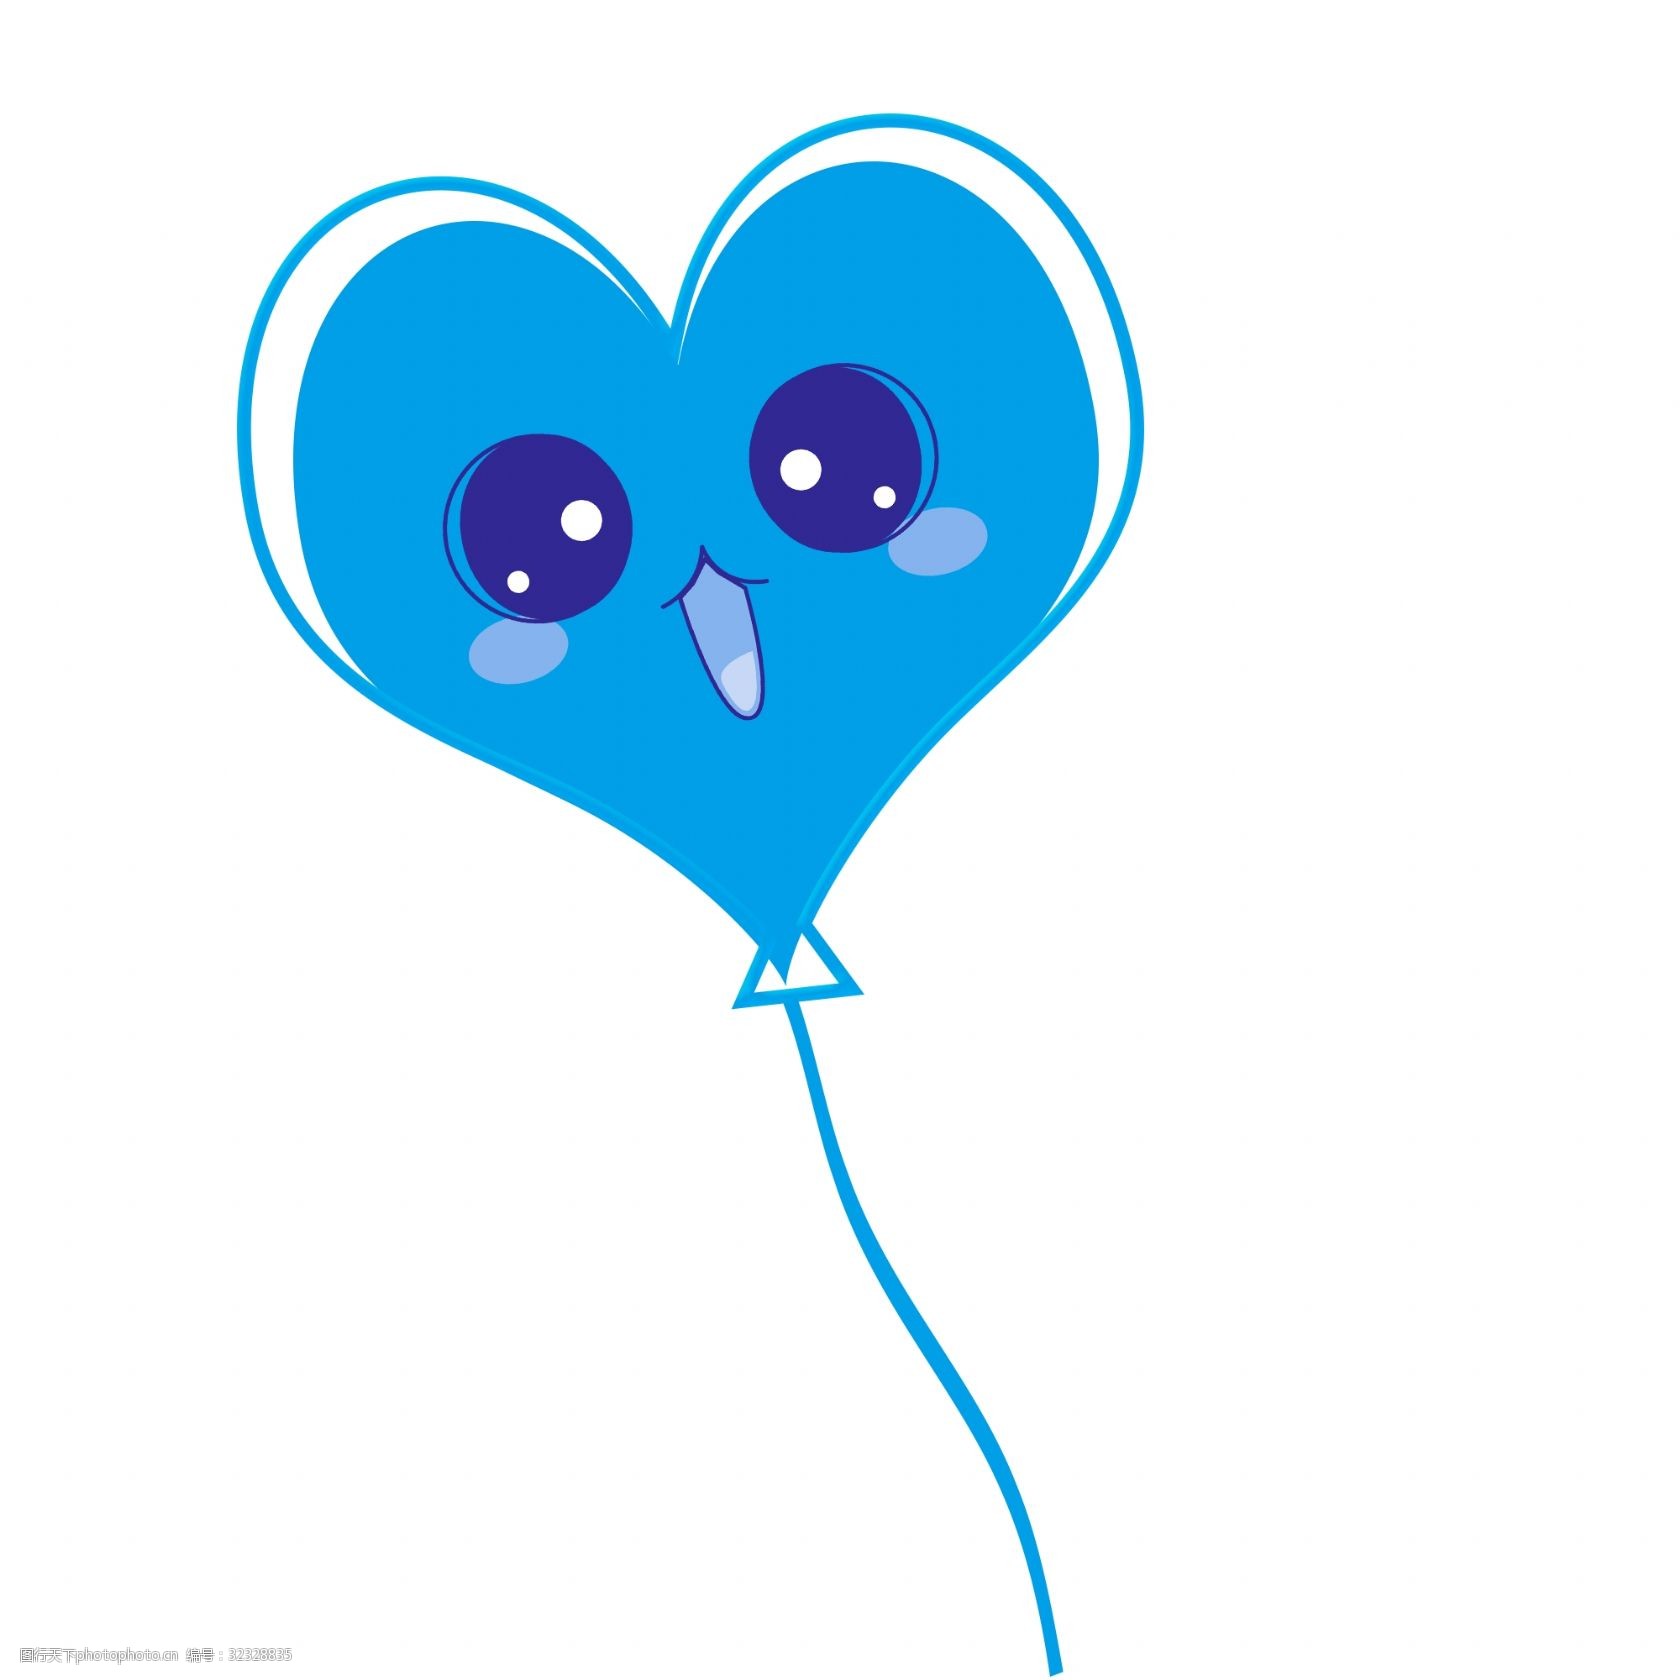 关键词:手绘可爱的爱心气球 卡通手绘 水彩 蓝色 气球 爱心 可爱 呆萌